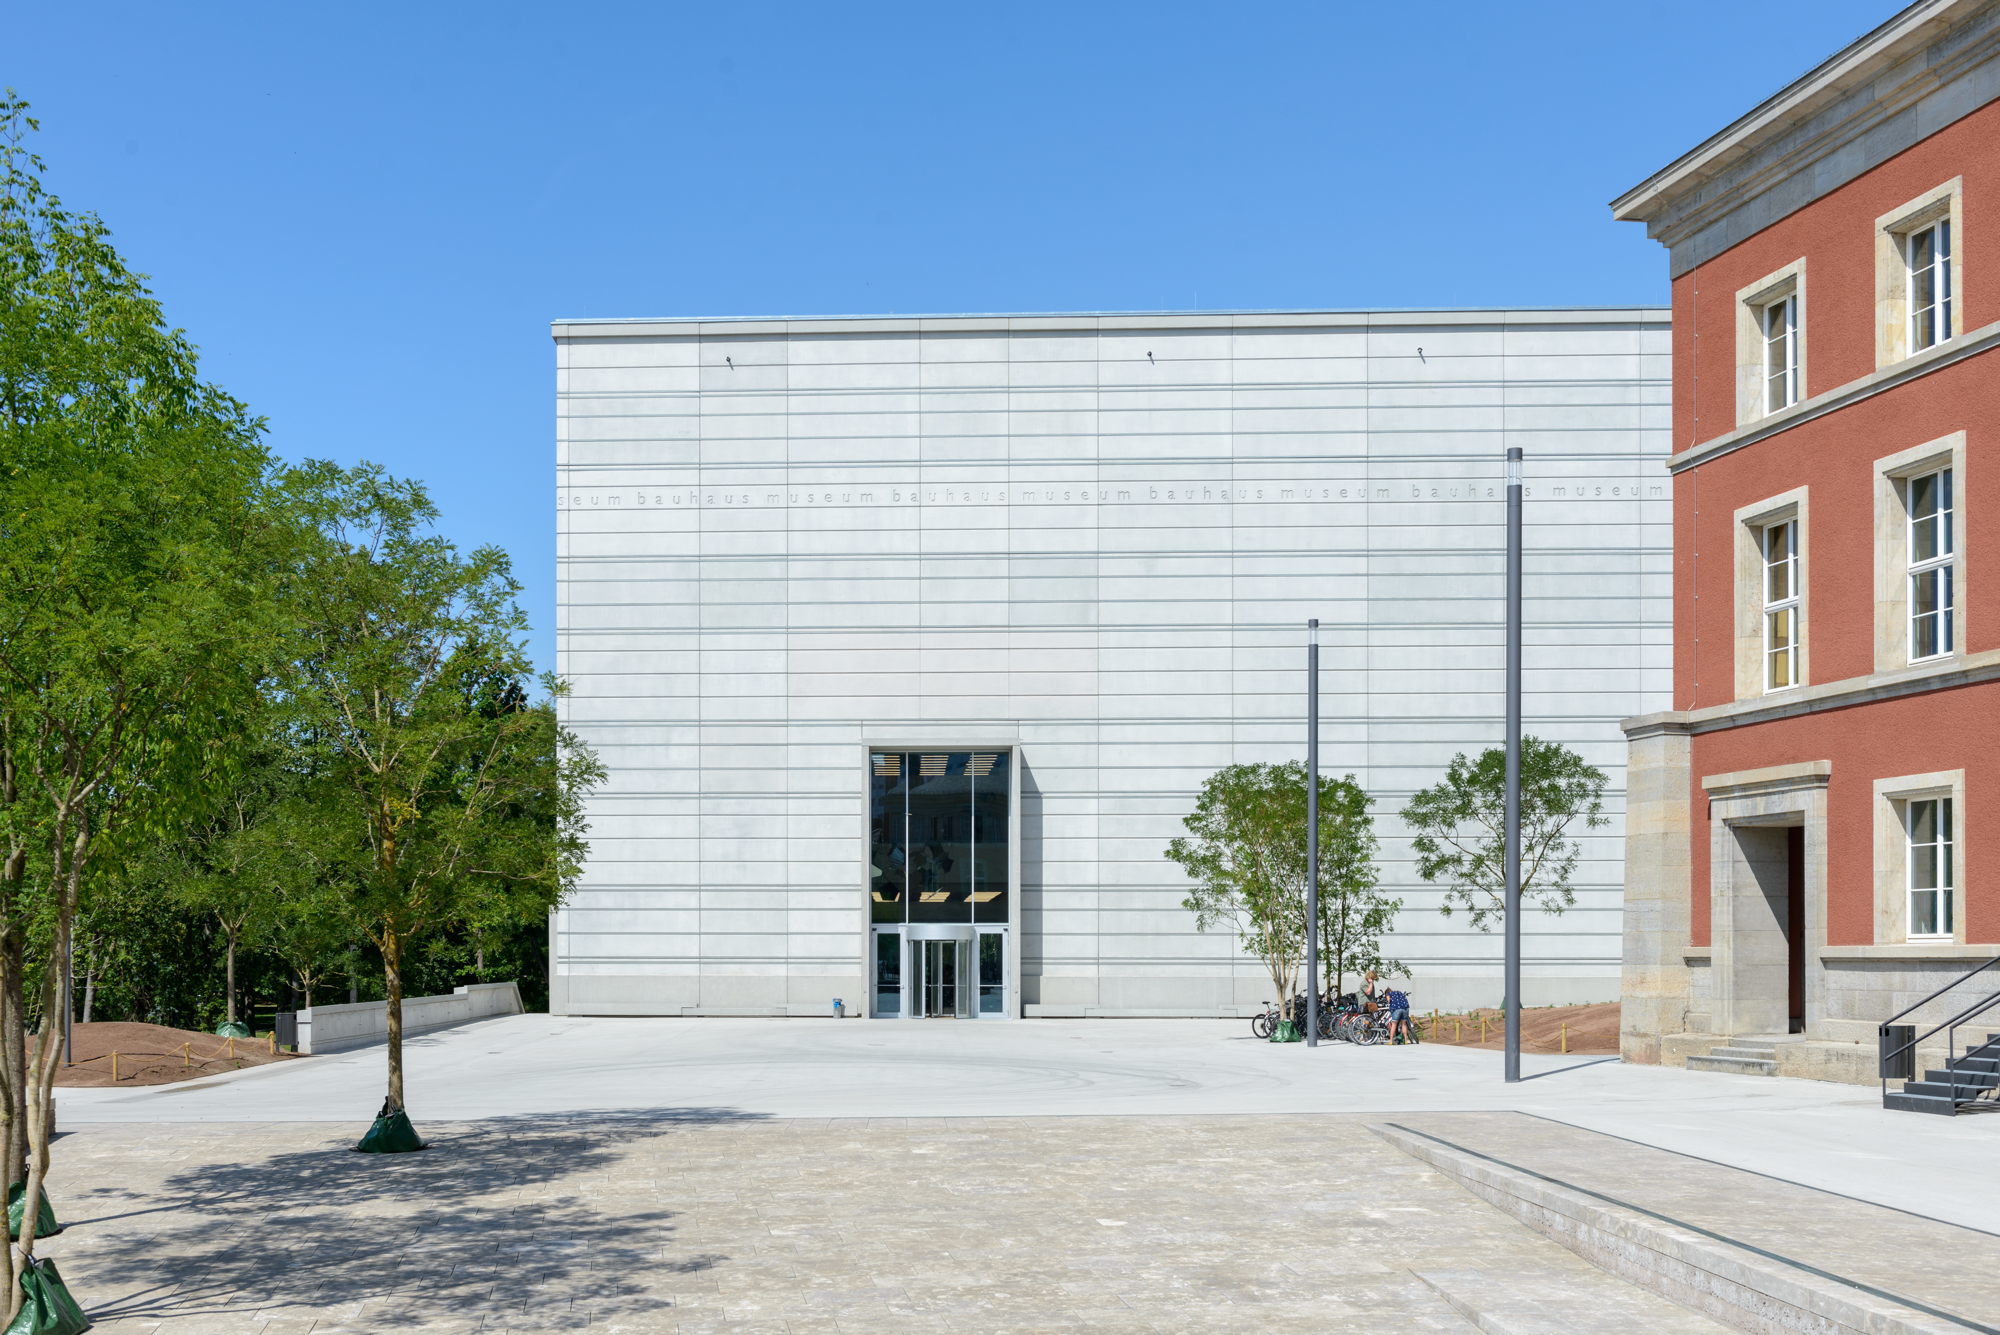  Bauhaus  Museum von Heike Hanada er ffnet Formale 